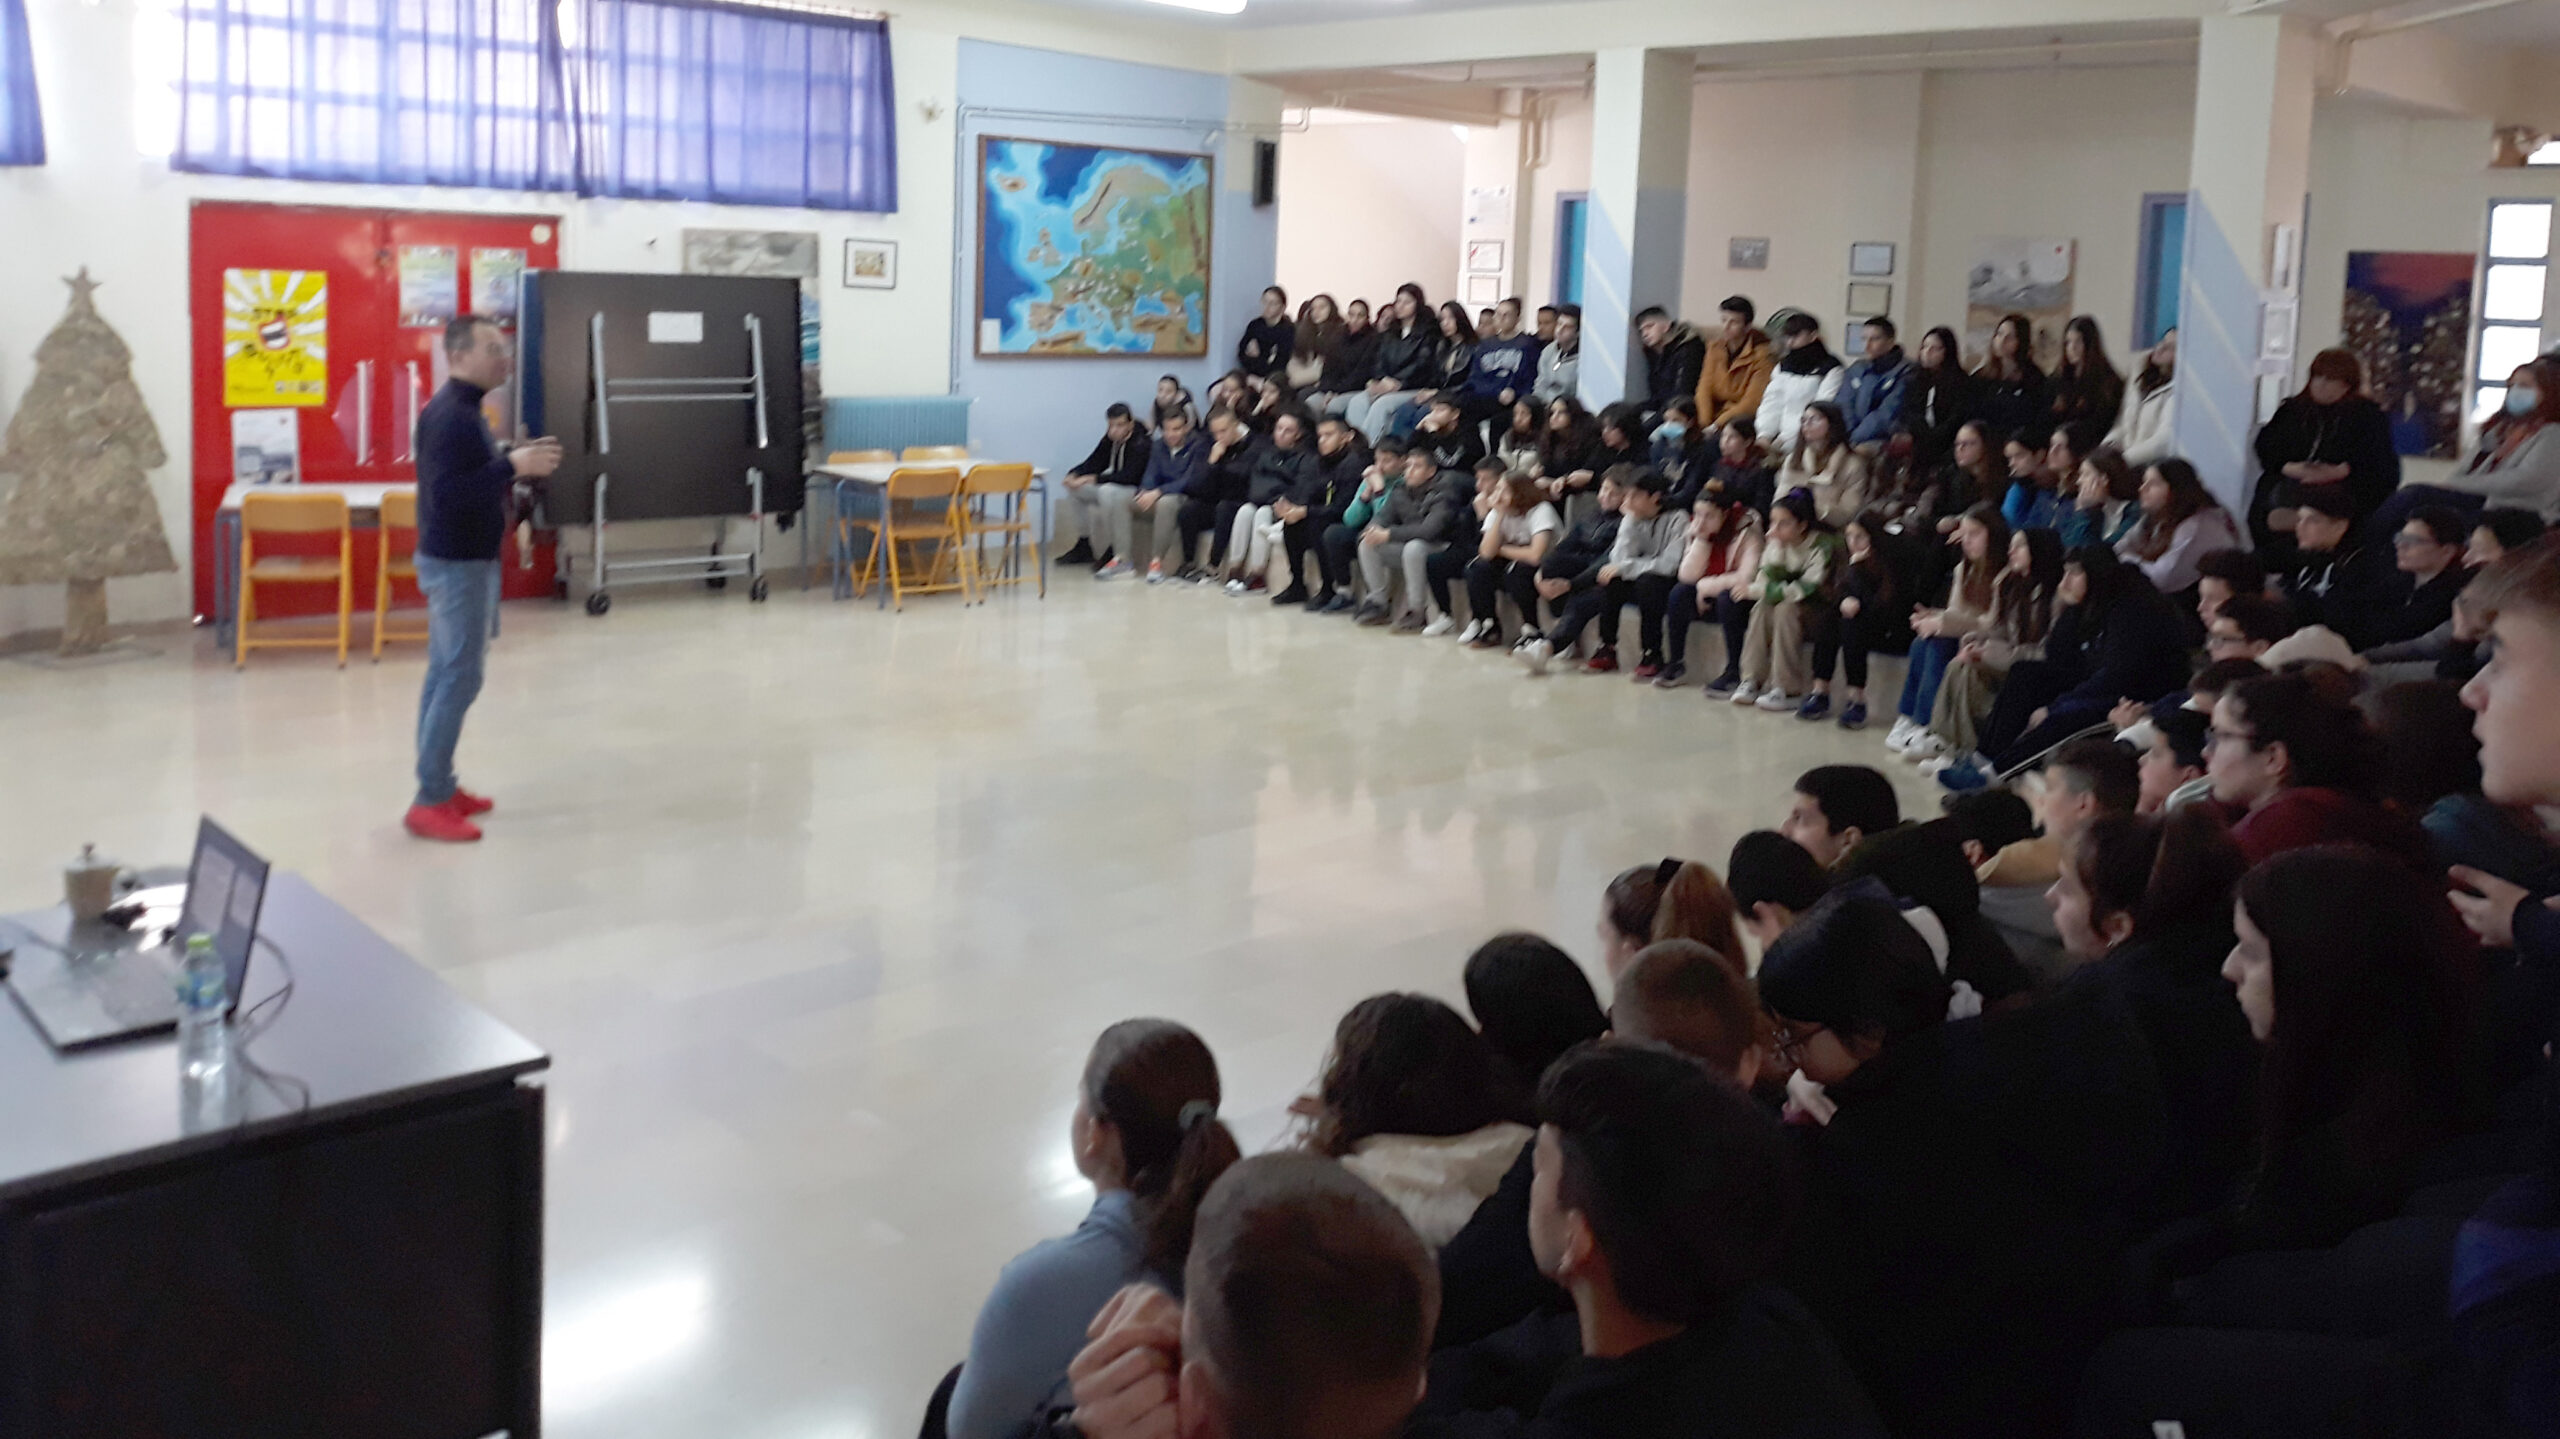 Διαδικτυακός εκφοβισμός κι ασφάλεια στο διαδίκτυο: εκδήλωση στο Γυμνάσιο-Λ.Τ. Ευξεινούπολης